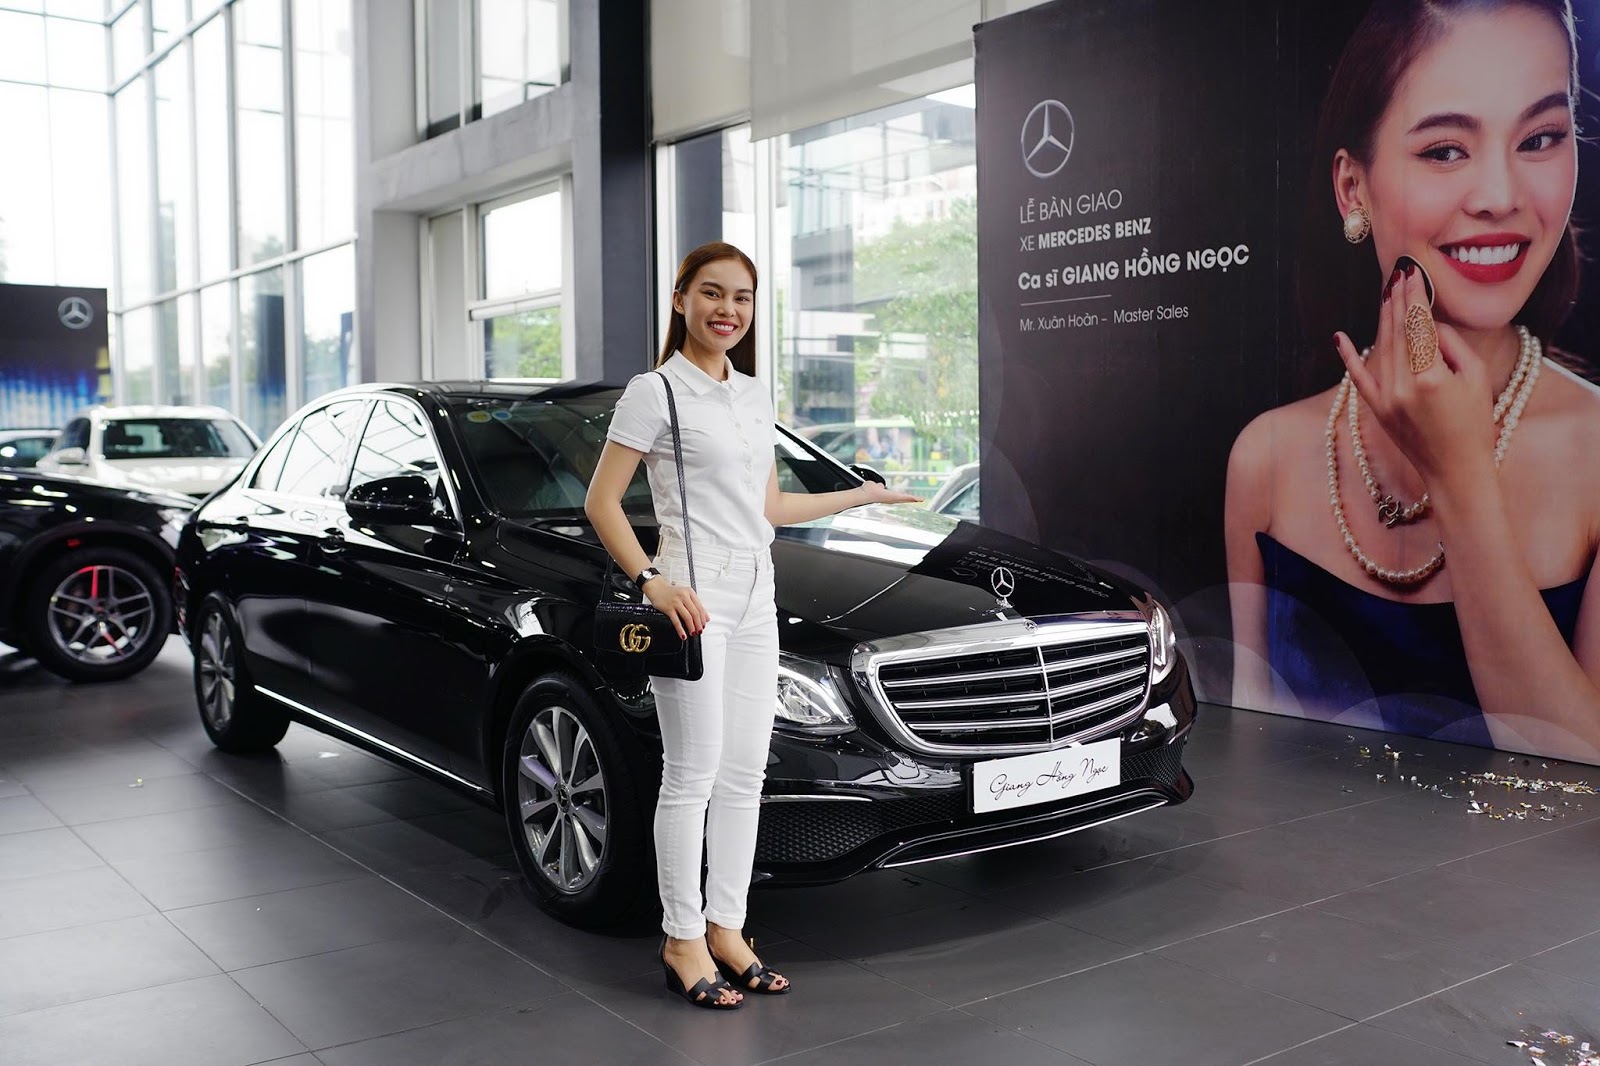 Cận cảnh chiếc xe Mercedes Maybach S500 11 tỉ mới được Ngọc Trinh độ